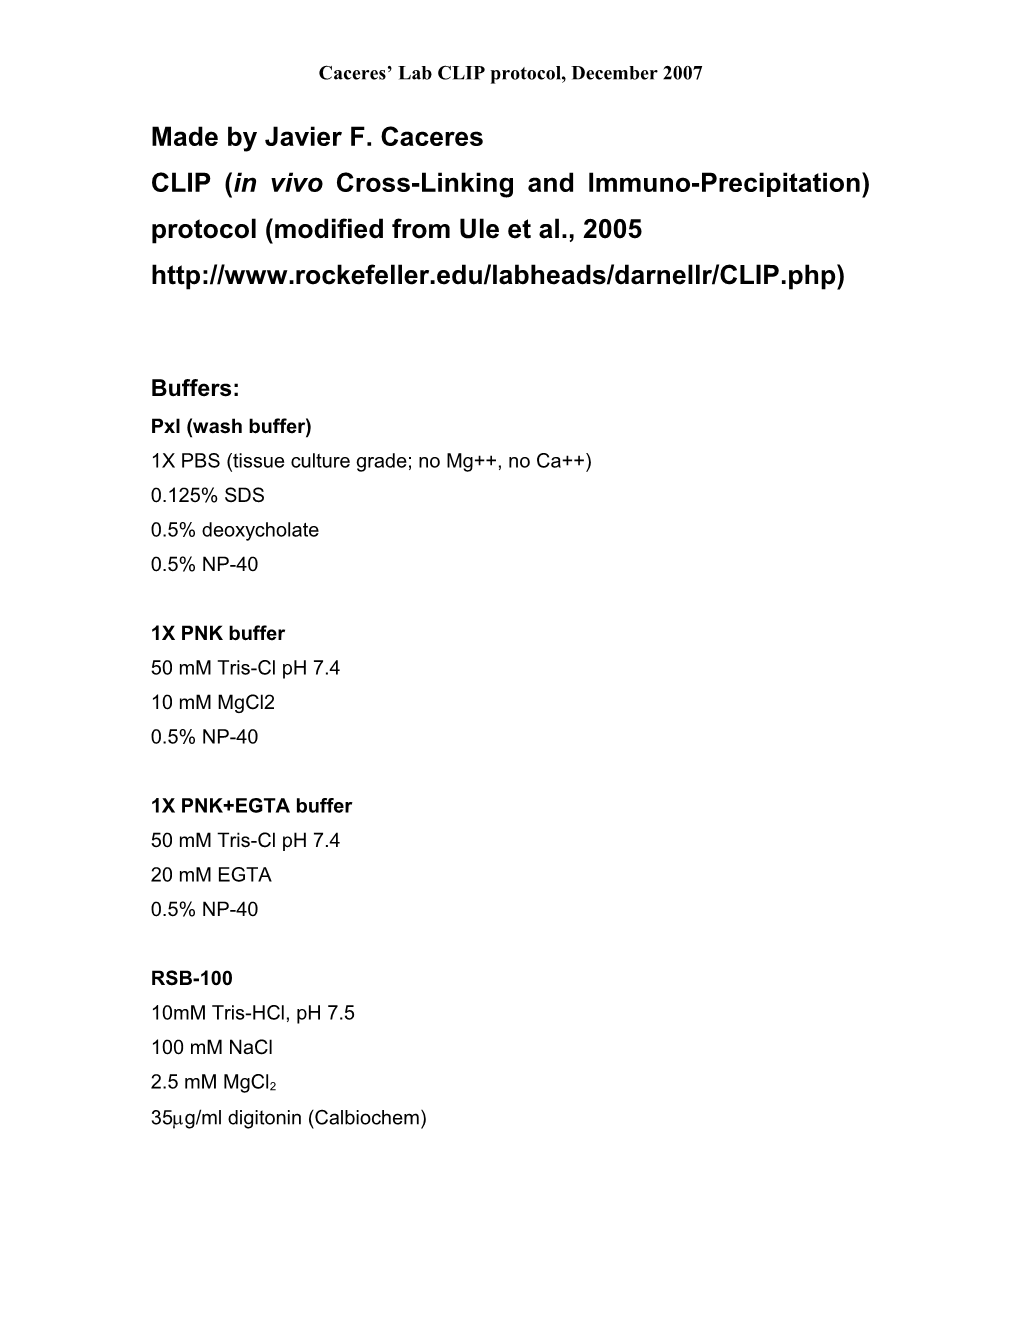 CLIP (In Vivo Cross-Linking and Immuno-Precipitation) Protocol